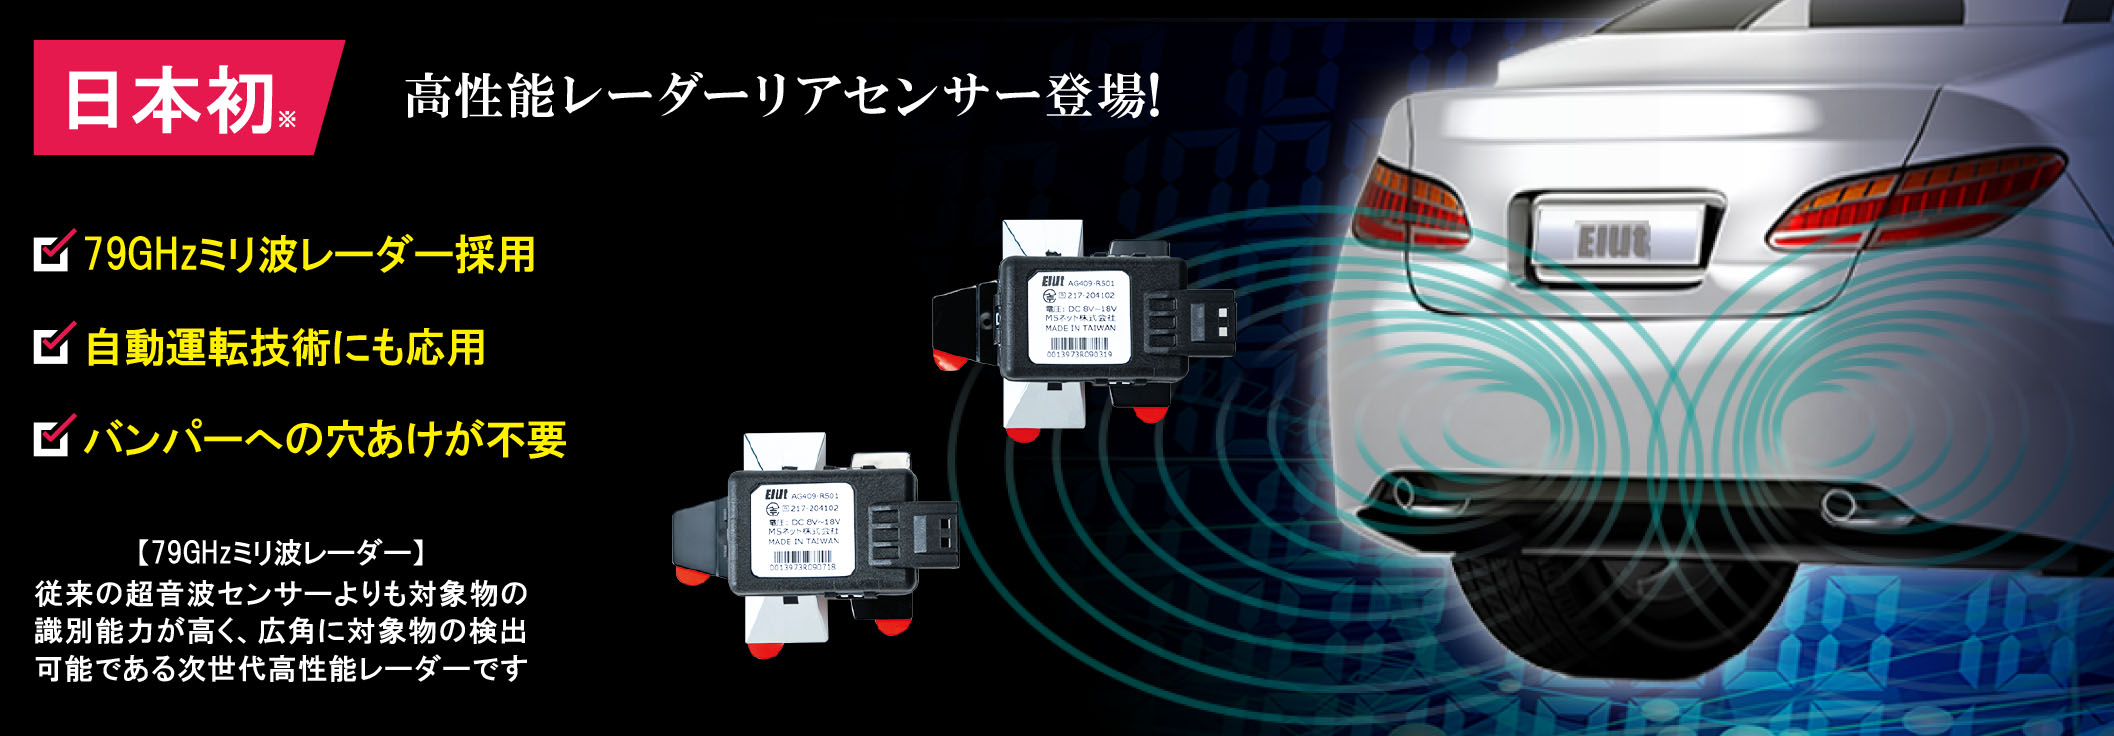 日本初 高性能79ghzミリ波レーダー式リアセンサー Ag409 Rs01 好評発売中 Newscast